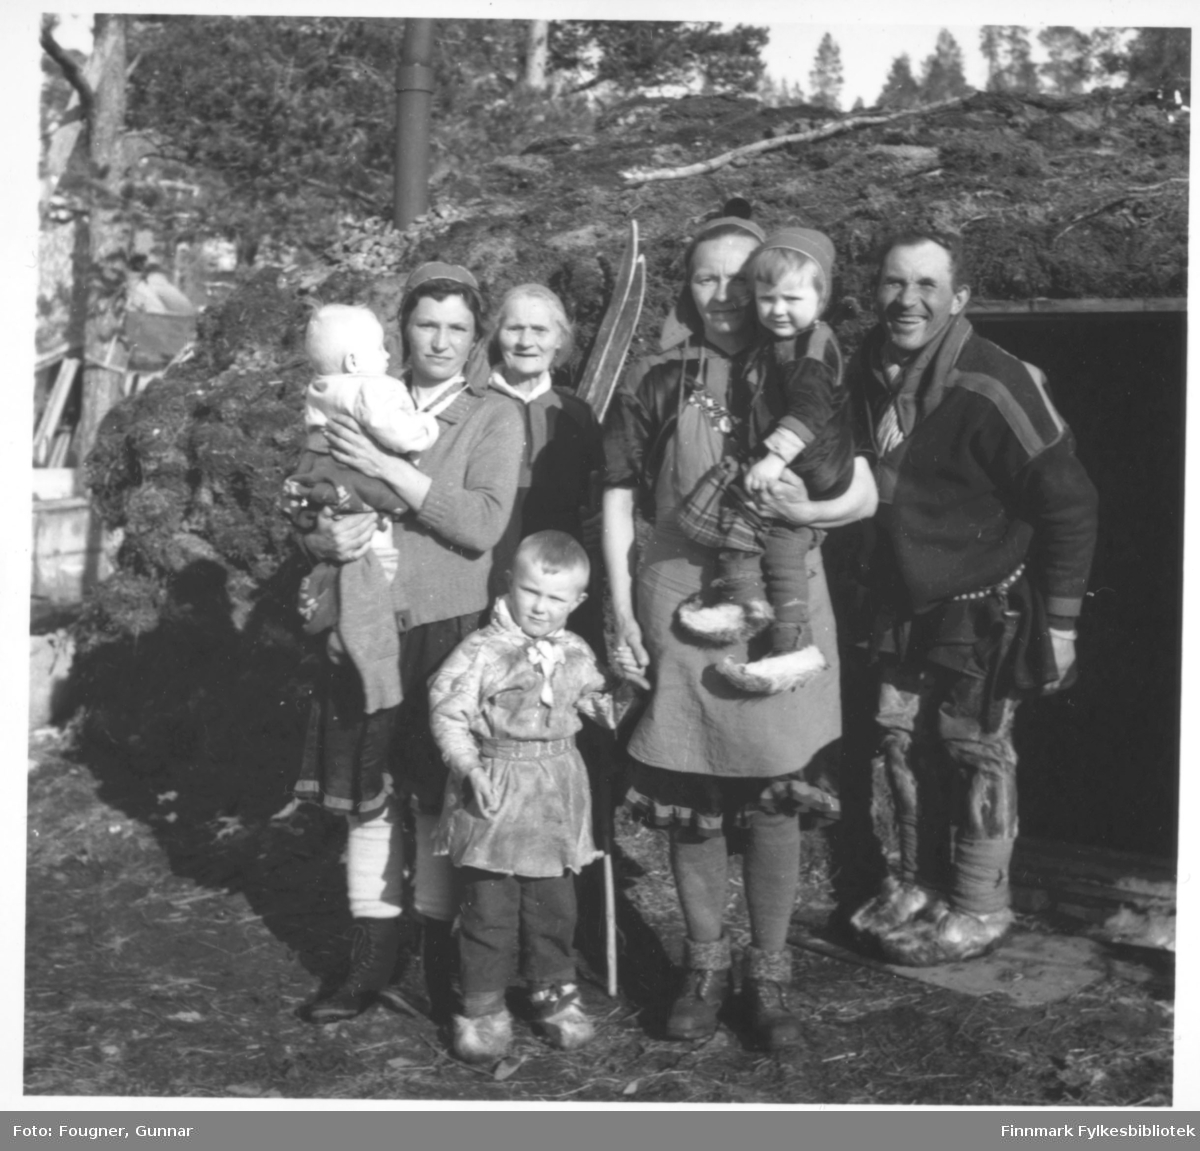 Fra Karasjok. En samefamilie utenfor jordgammen sin. Fra høyre: Elvira Benoni Kåven Bueng, Marit Nilsen (Ãndde MÃ¡ret, fra Beskenjarga), Anna Gudvei Mosebakken og Nils Nilsen Biti (fra Suosjavri). Elvira er født i Porsanger og de andre på bildet er fra Karasjok.